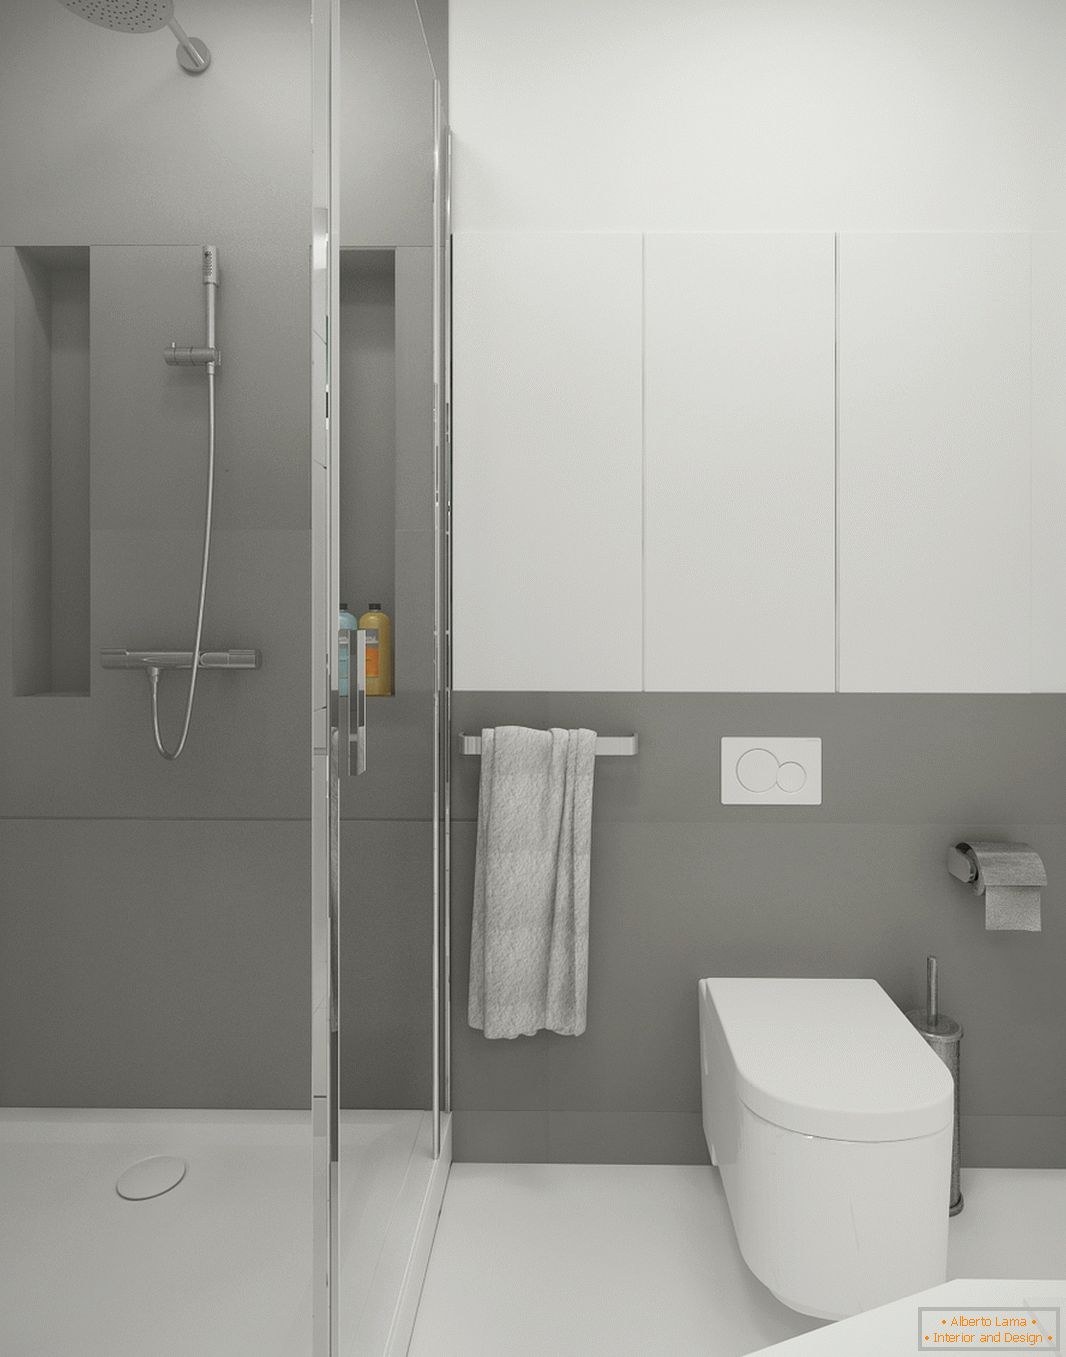 Cuarto de baño en color blanco-gris